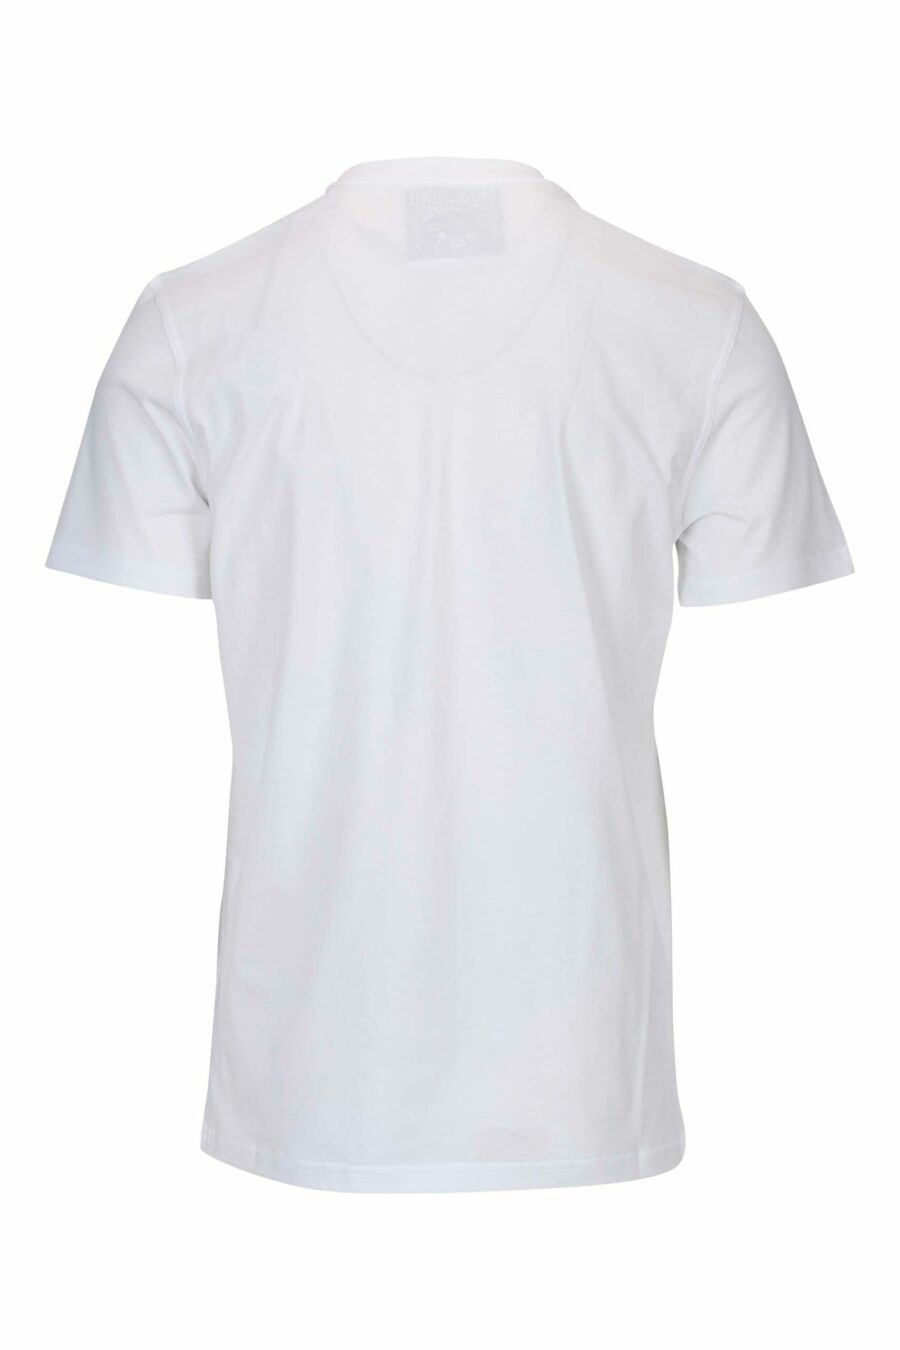 Camiseta blanca con minilogo oso en puntos monocromático - 667113455822 1 scaled